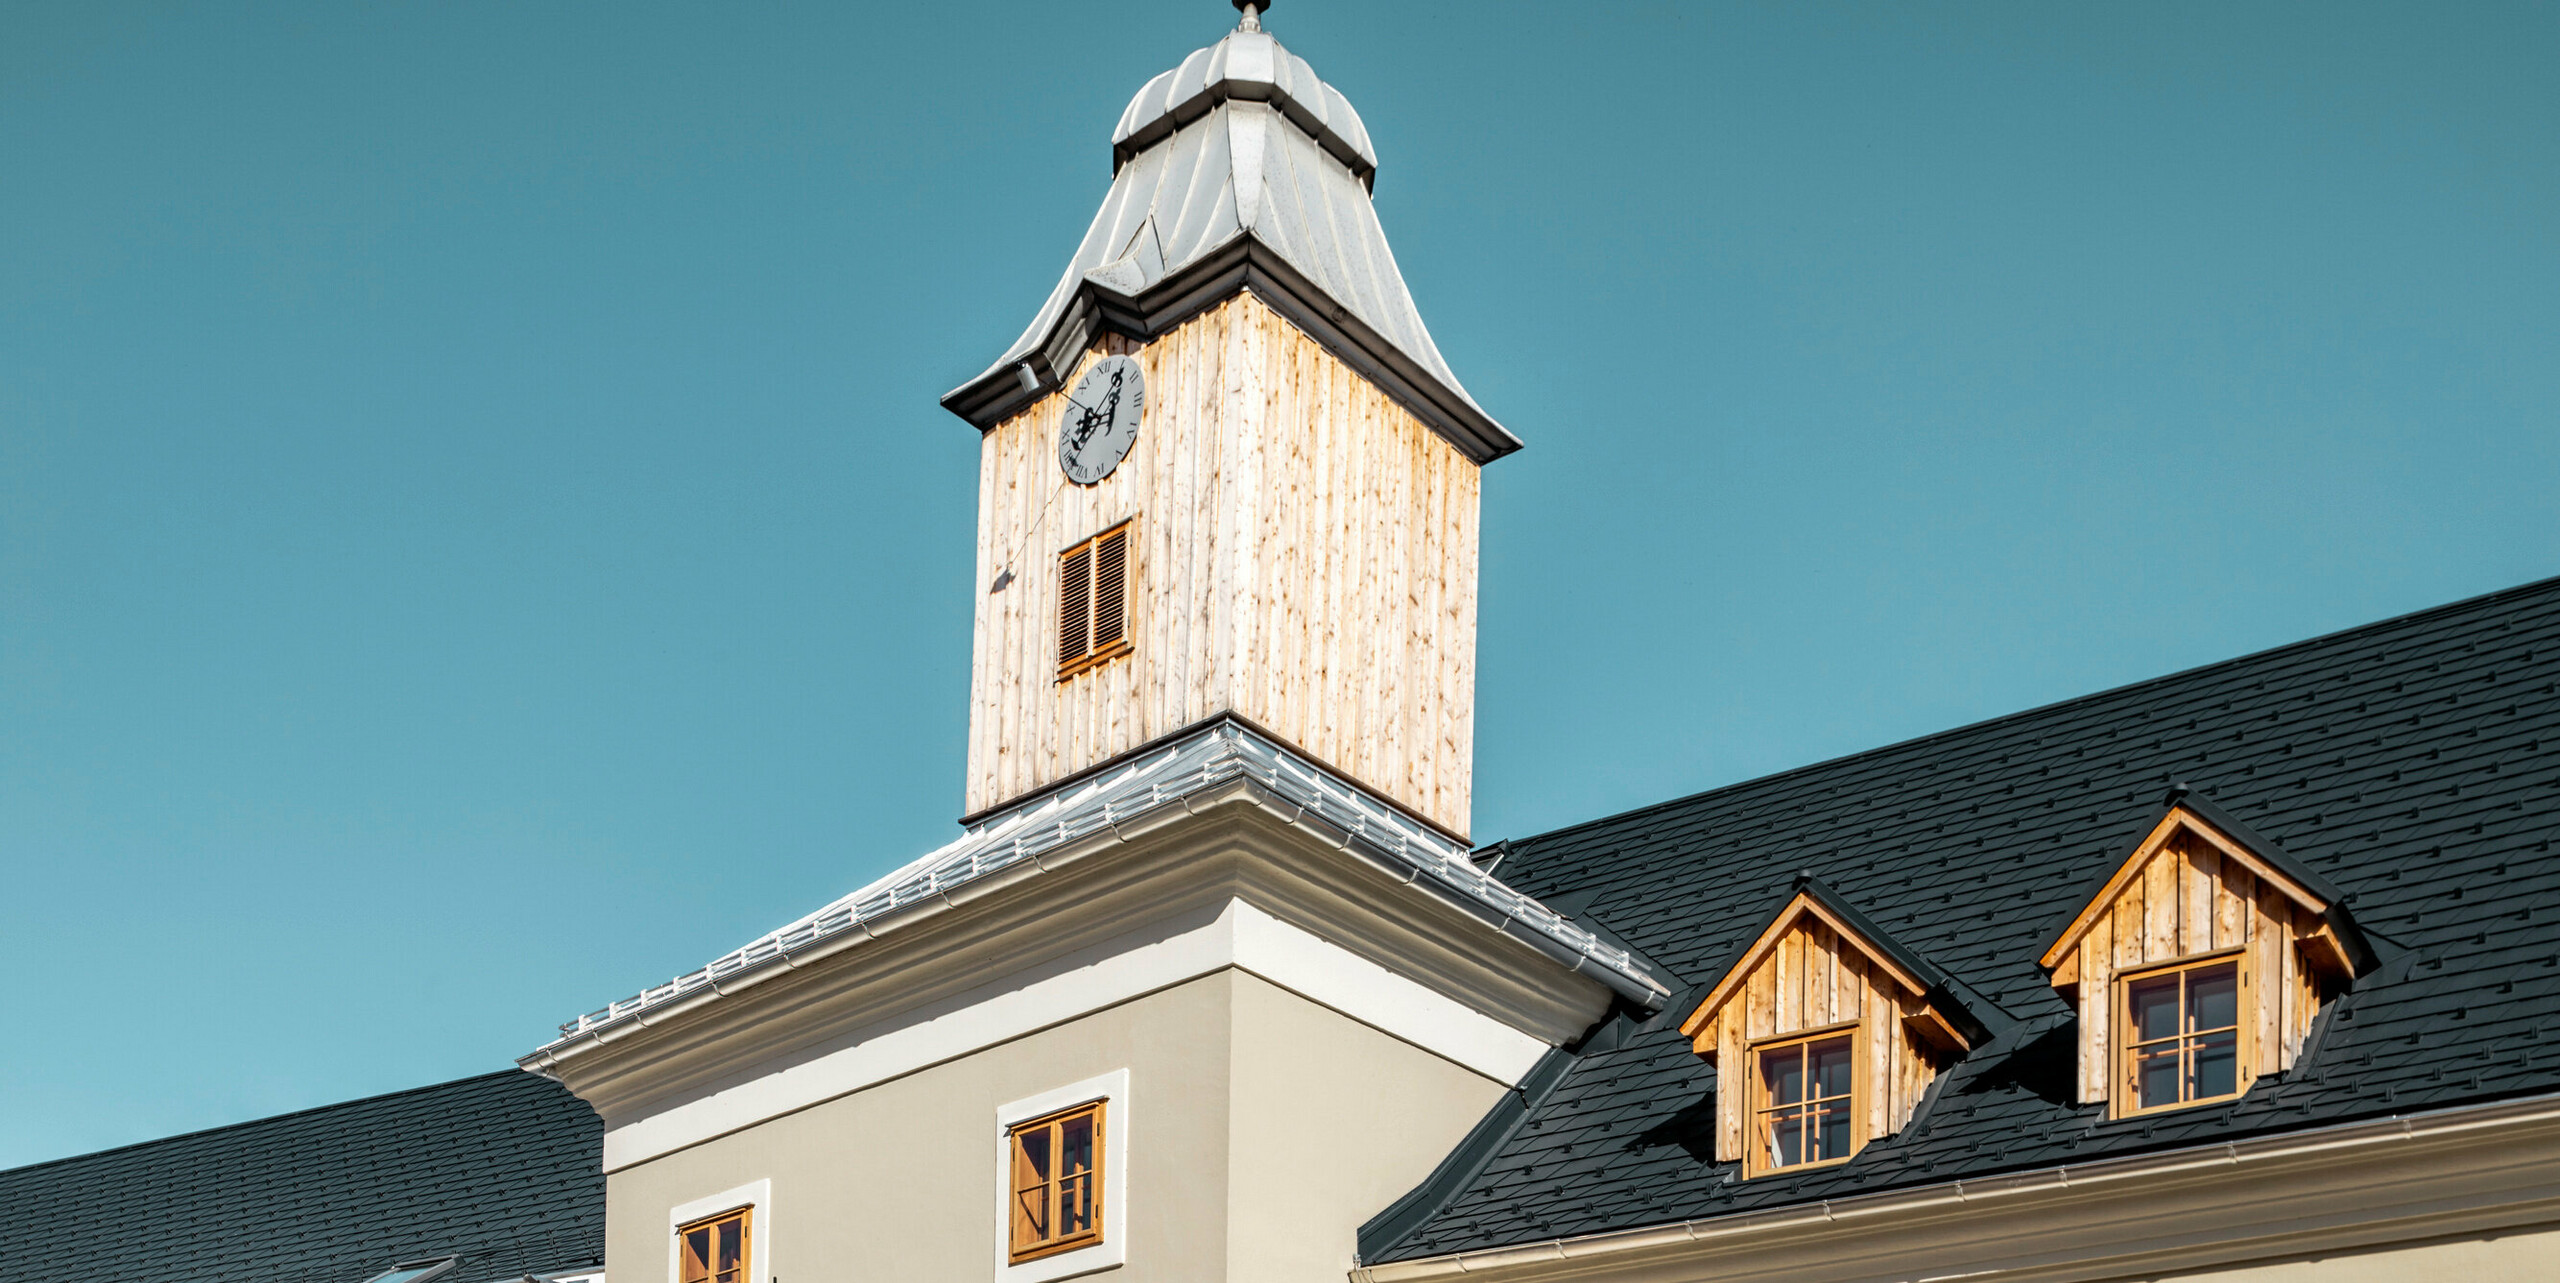 Streha hotela Glockenturm v Marktlu pri Lilienfeldu v Avstriji je prekrita s PREFA strešnimi skodlami v P.10 antracitni barvi. Sistem za odvodnjavanje PREFA je na stavbi ohranjen v naravnem aluminiju. Nedaleč stran od hotela Glockenturm se nahaja Leopold - naša gostilna, ki je prav tako prekrita s PREFA izdelki. 